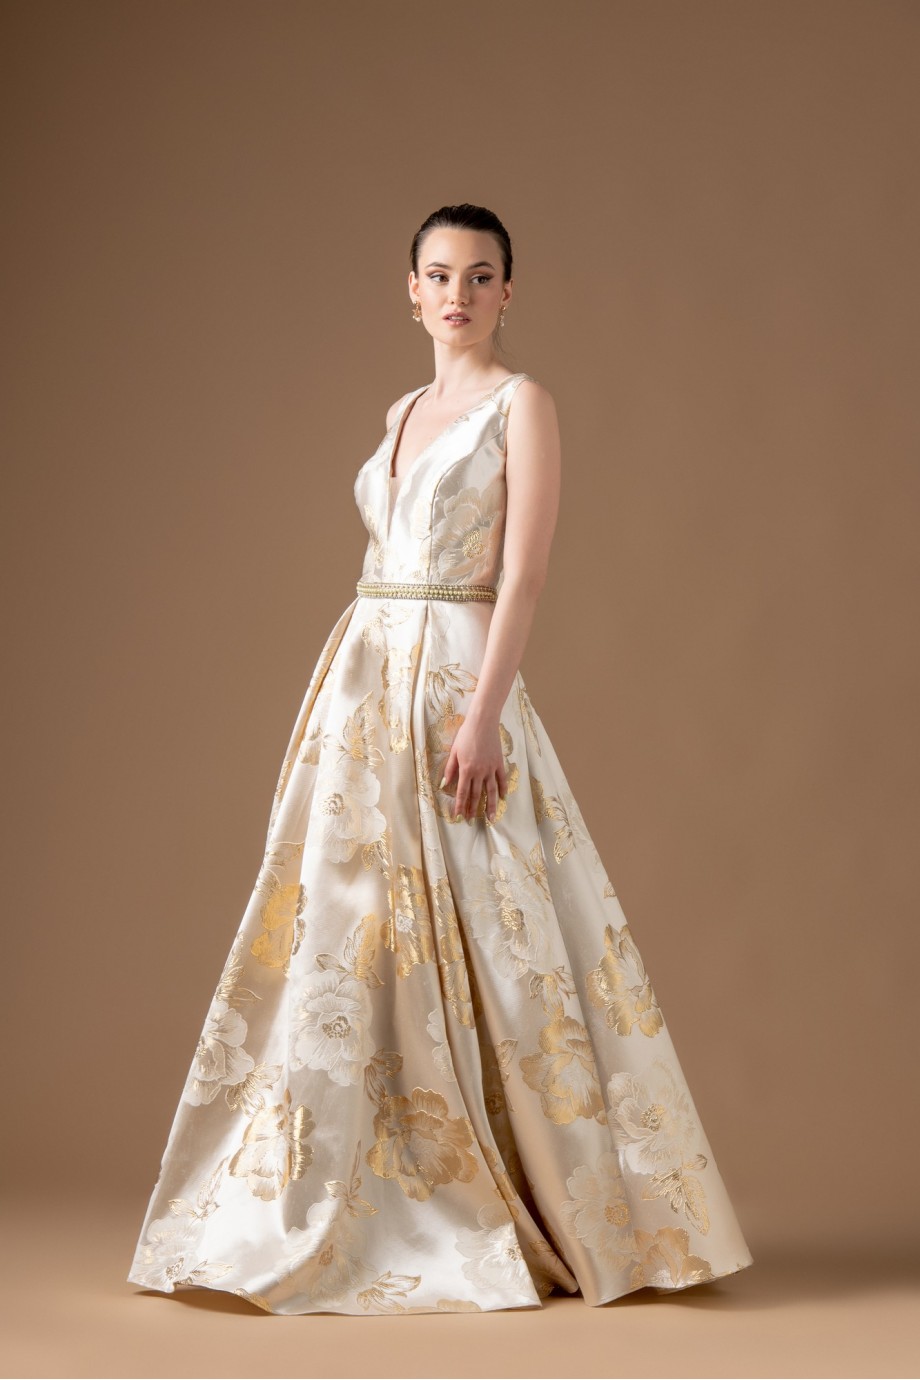 Μακρύ εκρου φόρεμα με μεγάλα χρυσά και λευκά λουλούδια